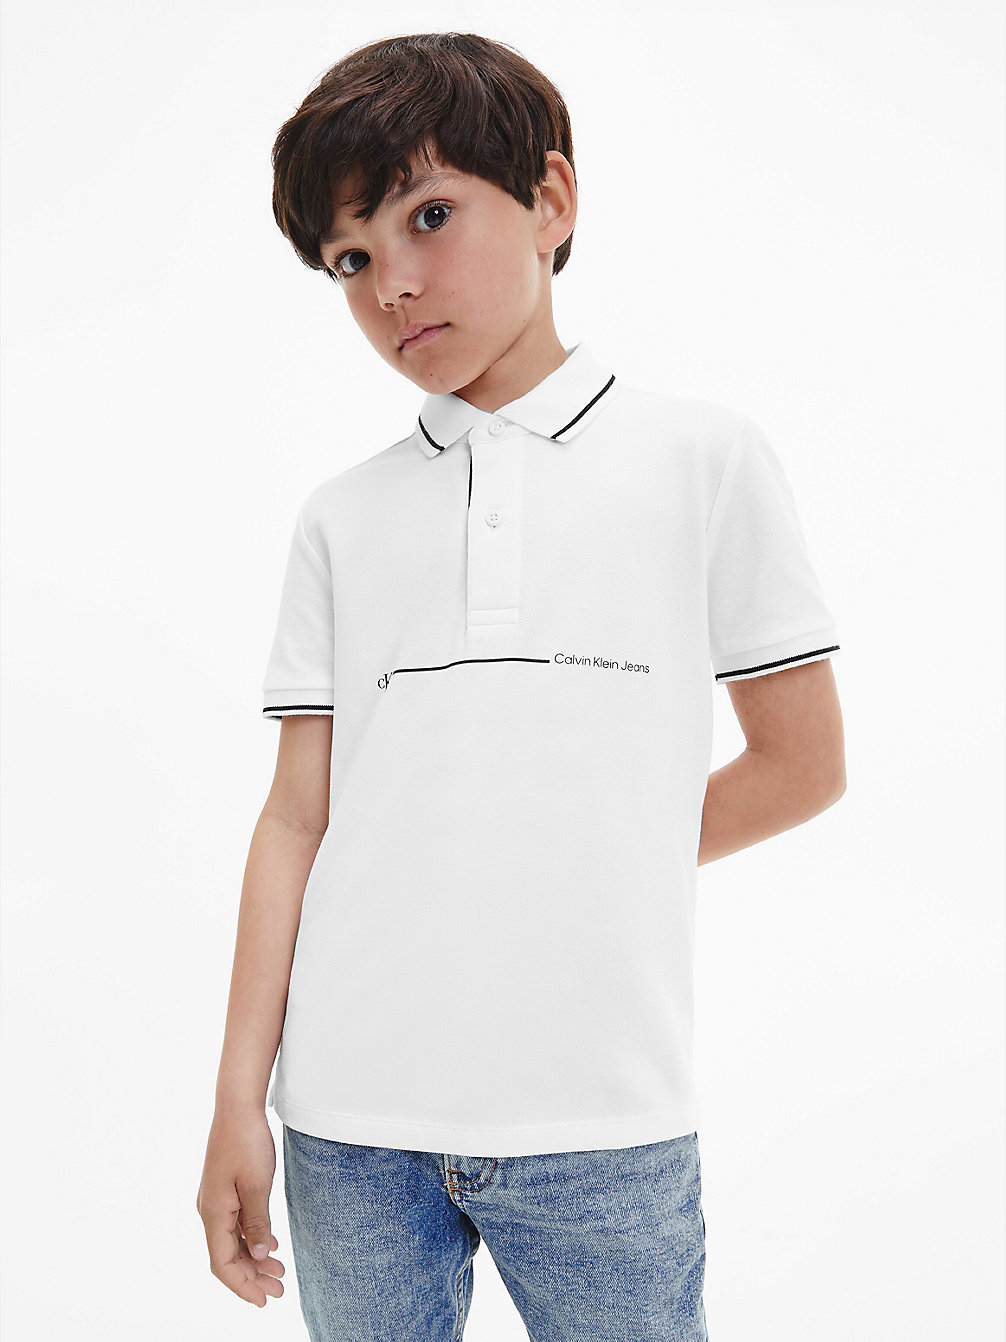 BRIGHT WHITE > Poloshirt Met Logostreep > undefined jongens - Calvin Klein